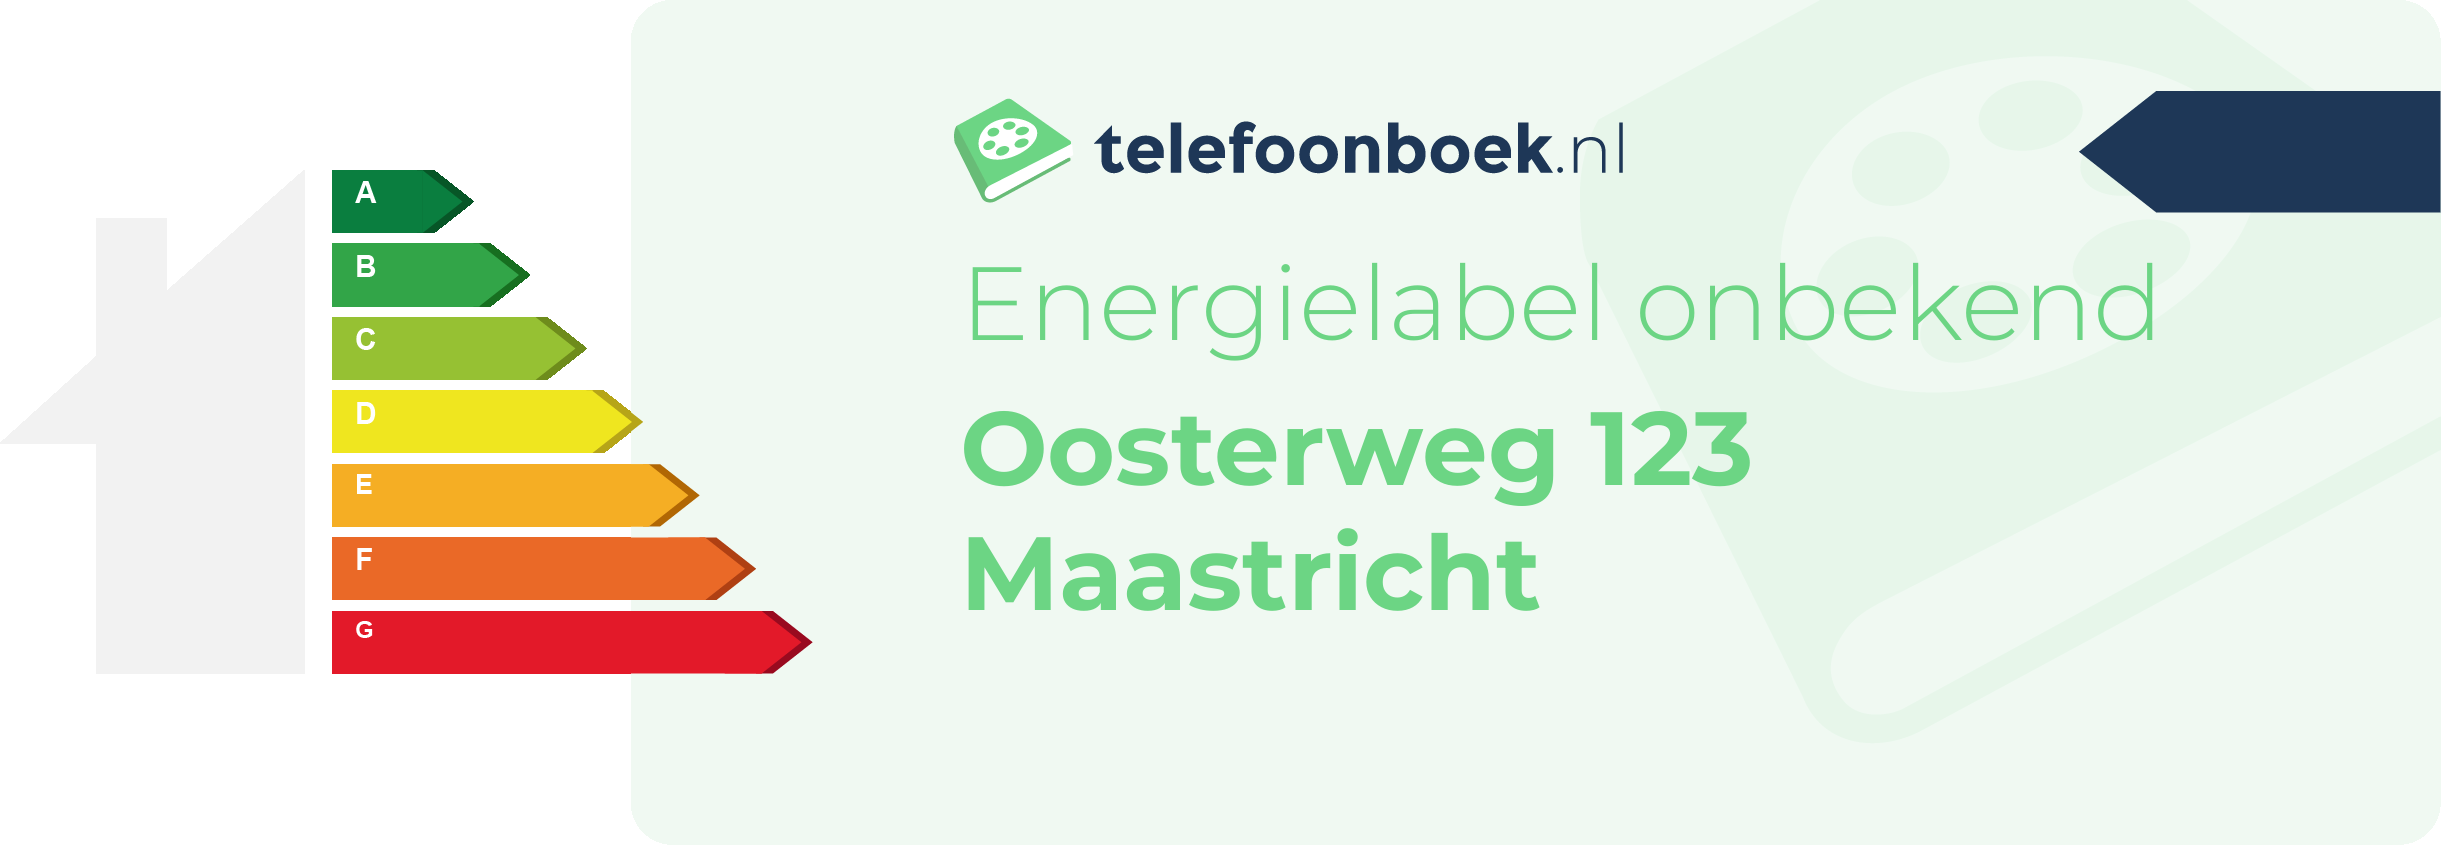 Energielabel Oosterweg 123 Maastricht